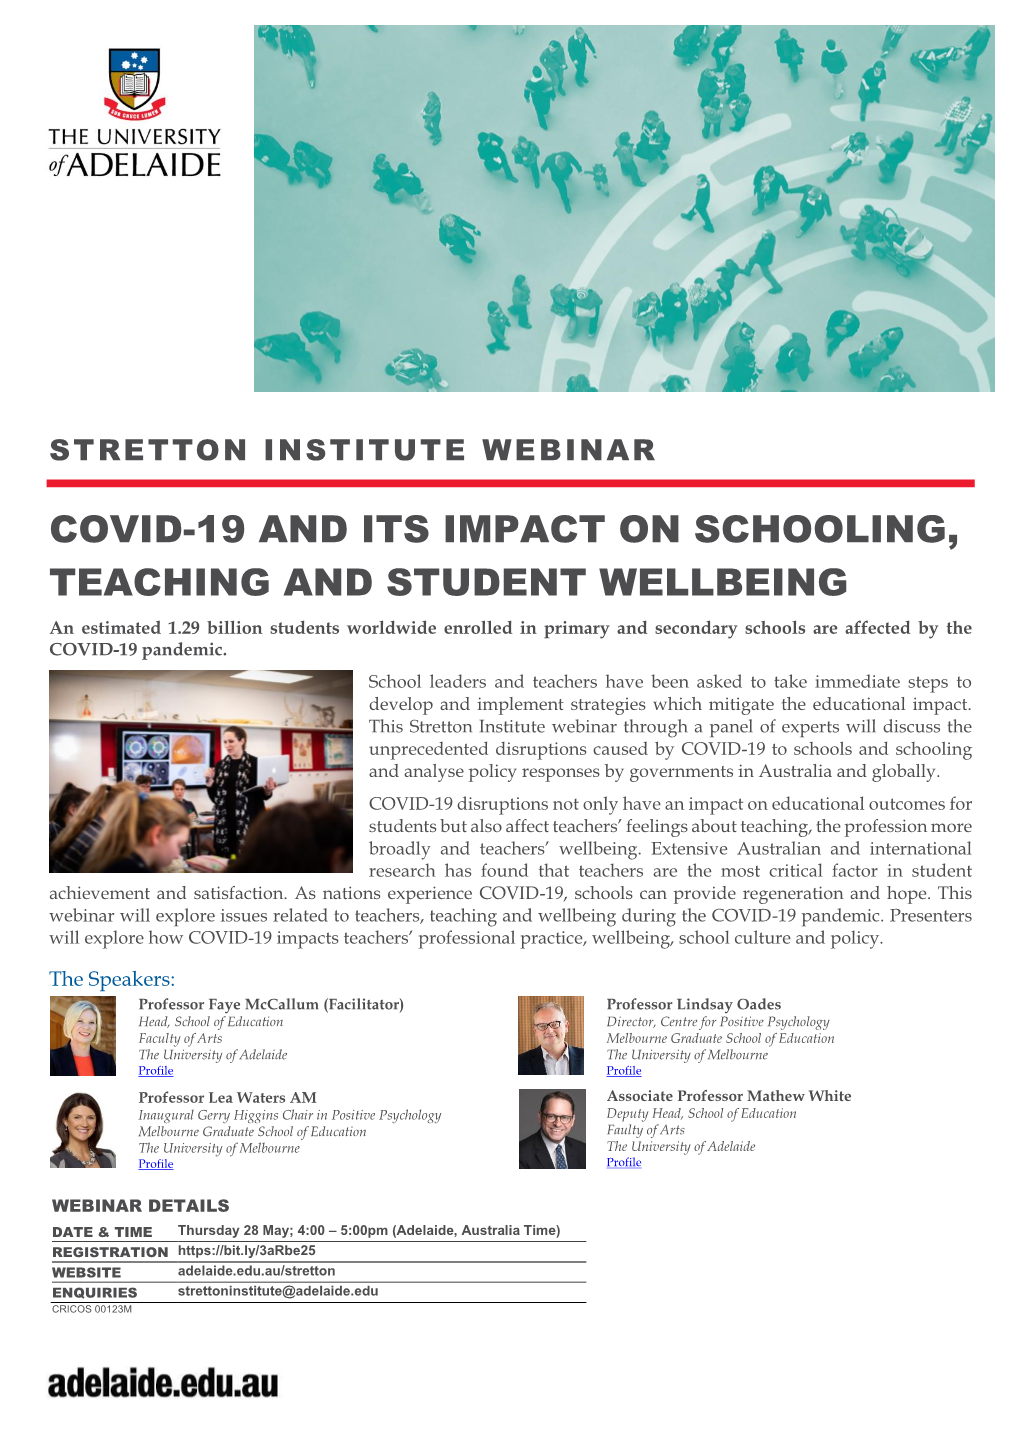 Covid-19 & Schooling Webinar Flyer